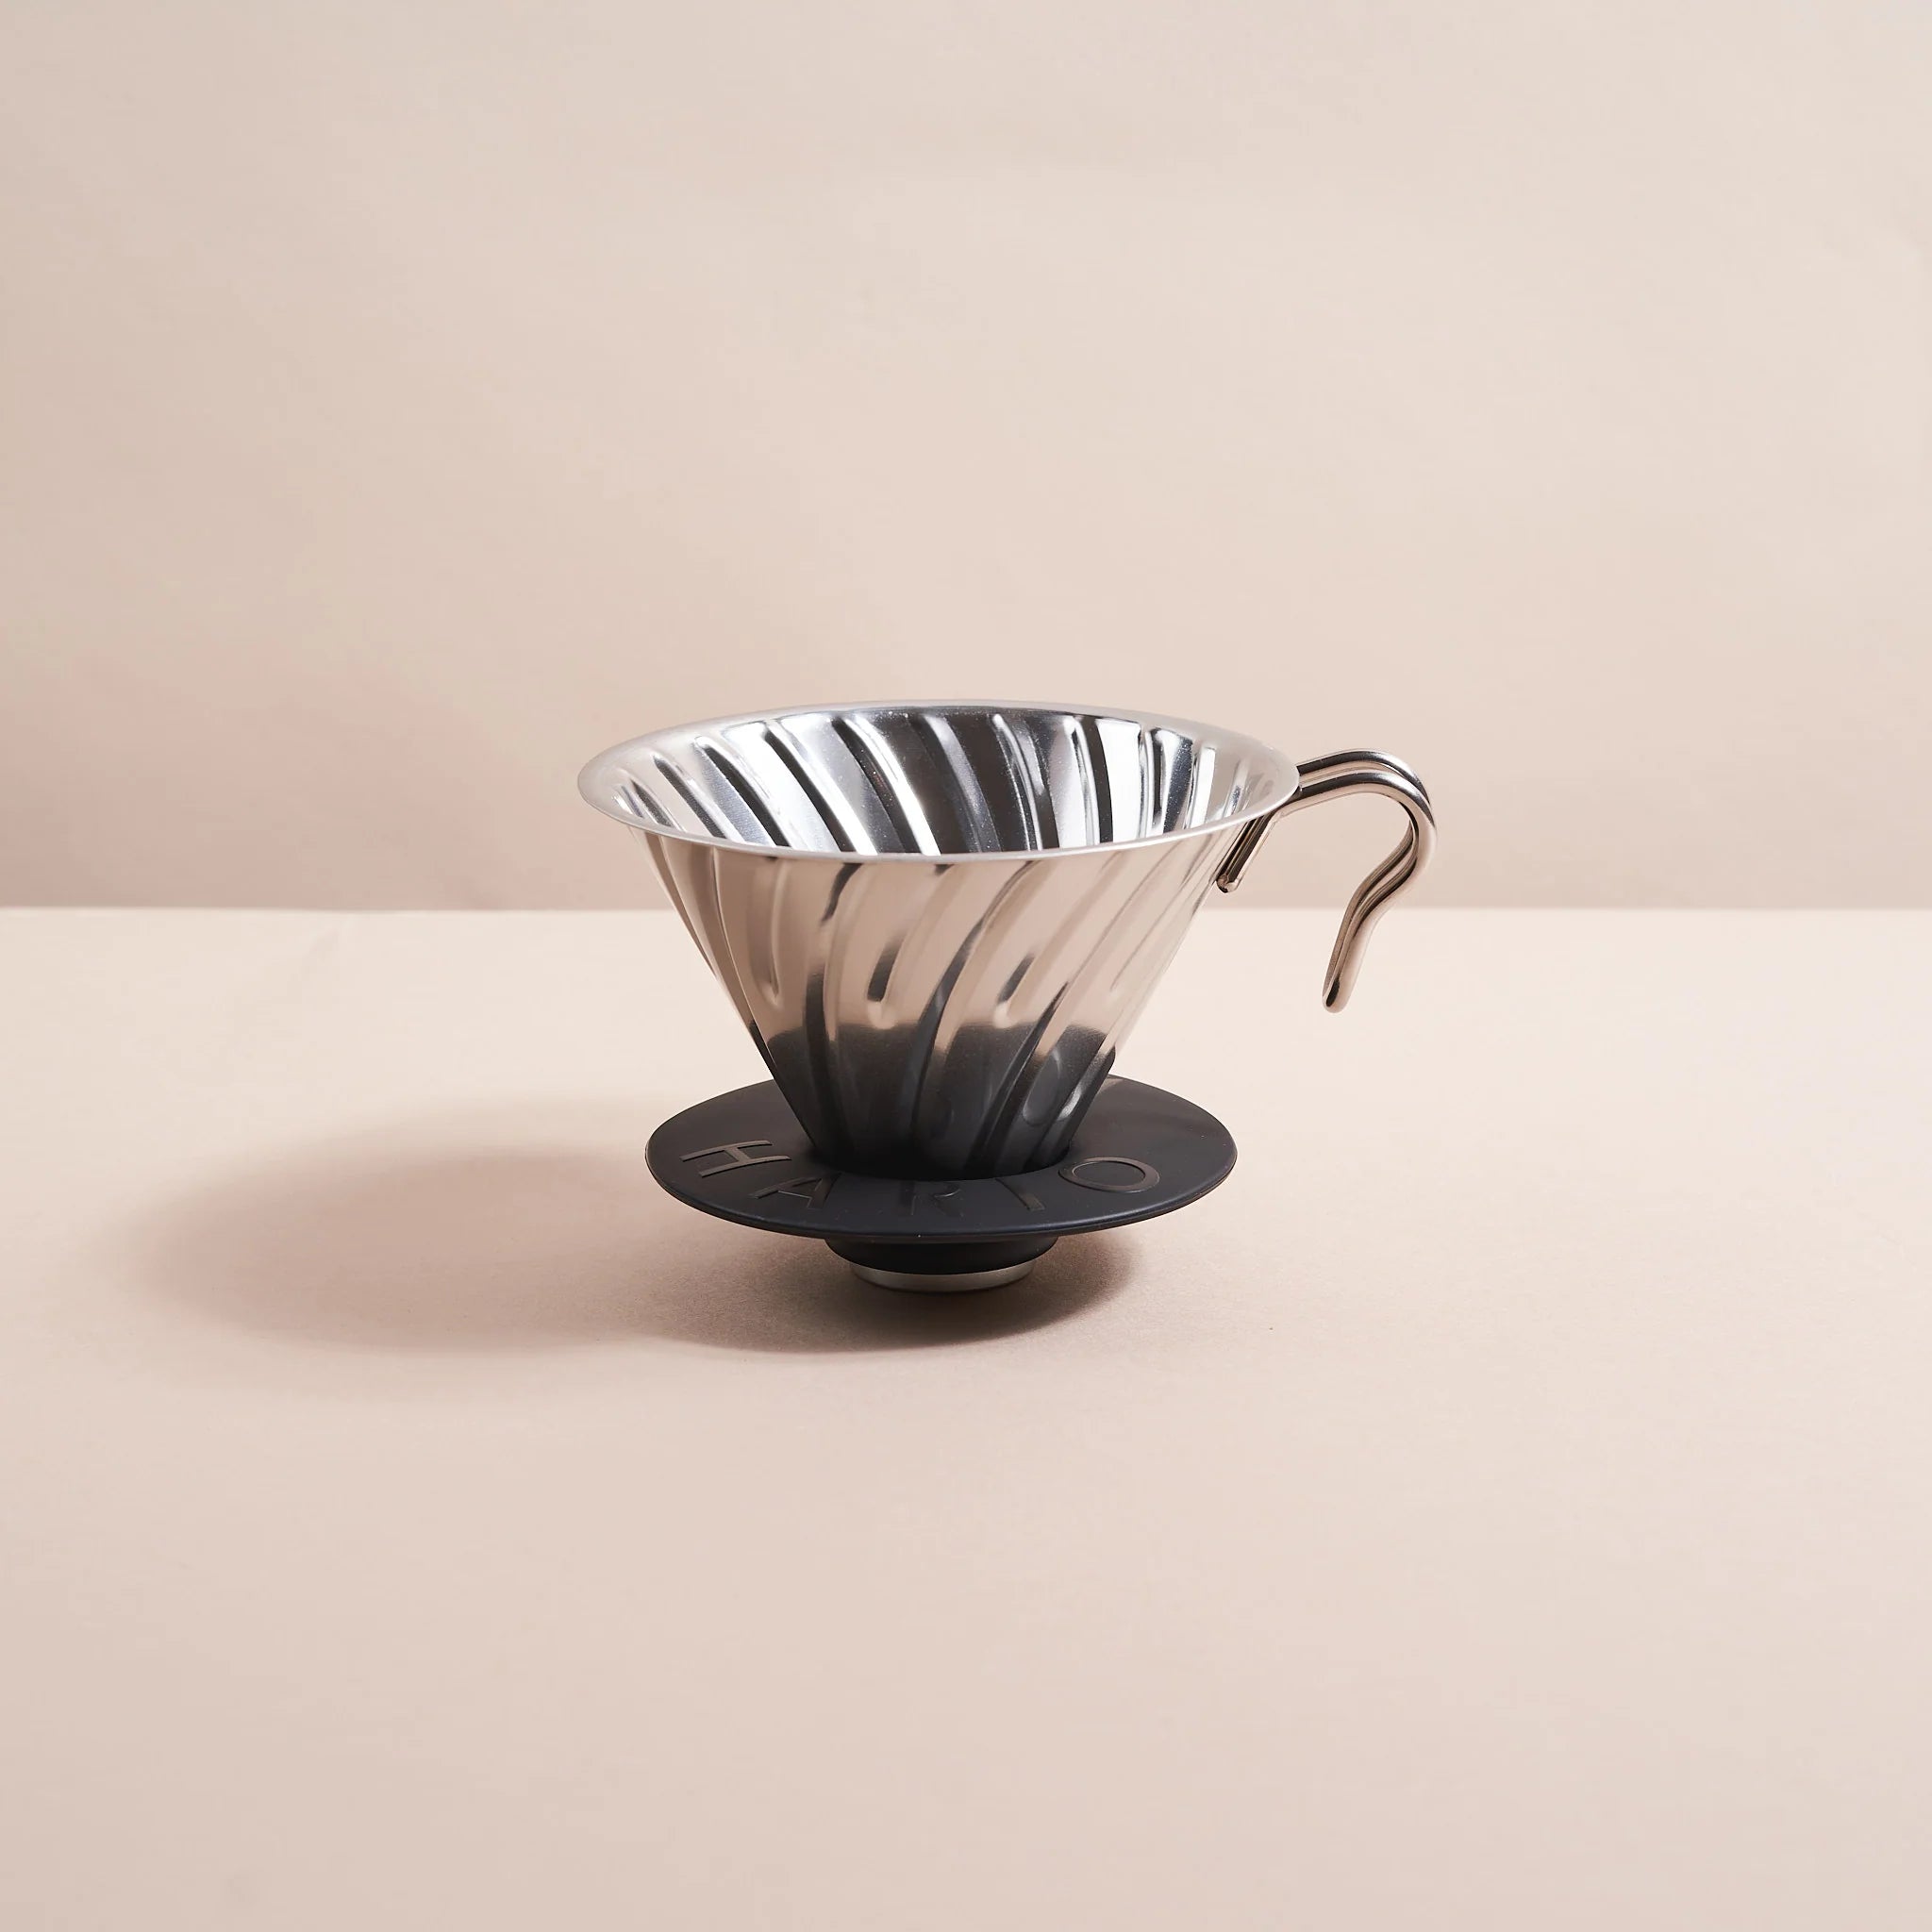 Diseño Icónico, Sabor Inigualable: Nuestra cafetera V60 Metal Dripper 02 combina diseño y funcionalidad en una sola pieza. Su forma cónica y las costillas en espiral permiten una extracción perfecta del café, ofreciendo un sabor profundo y delicioso en cada taza.